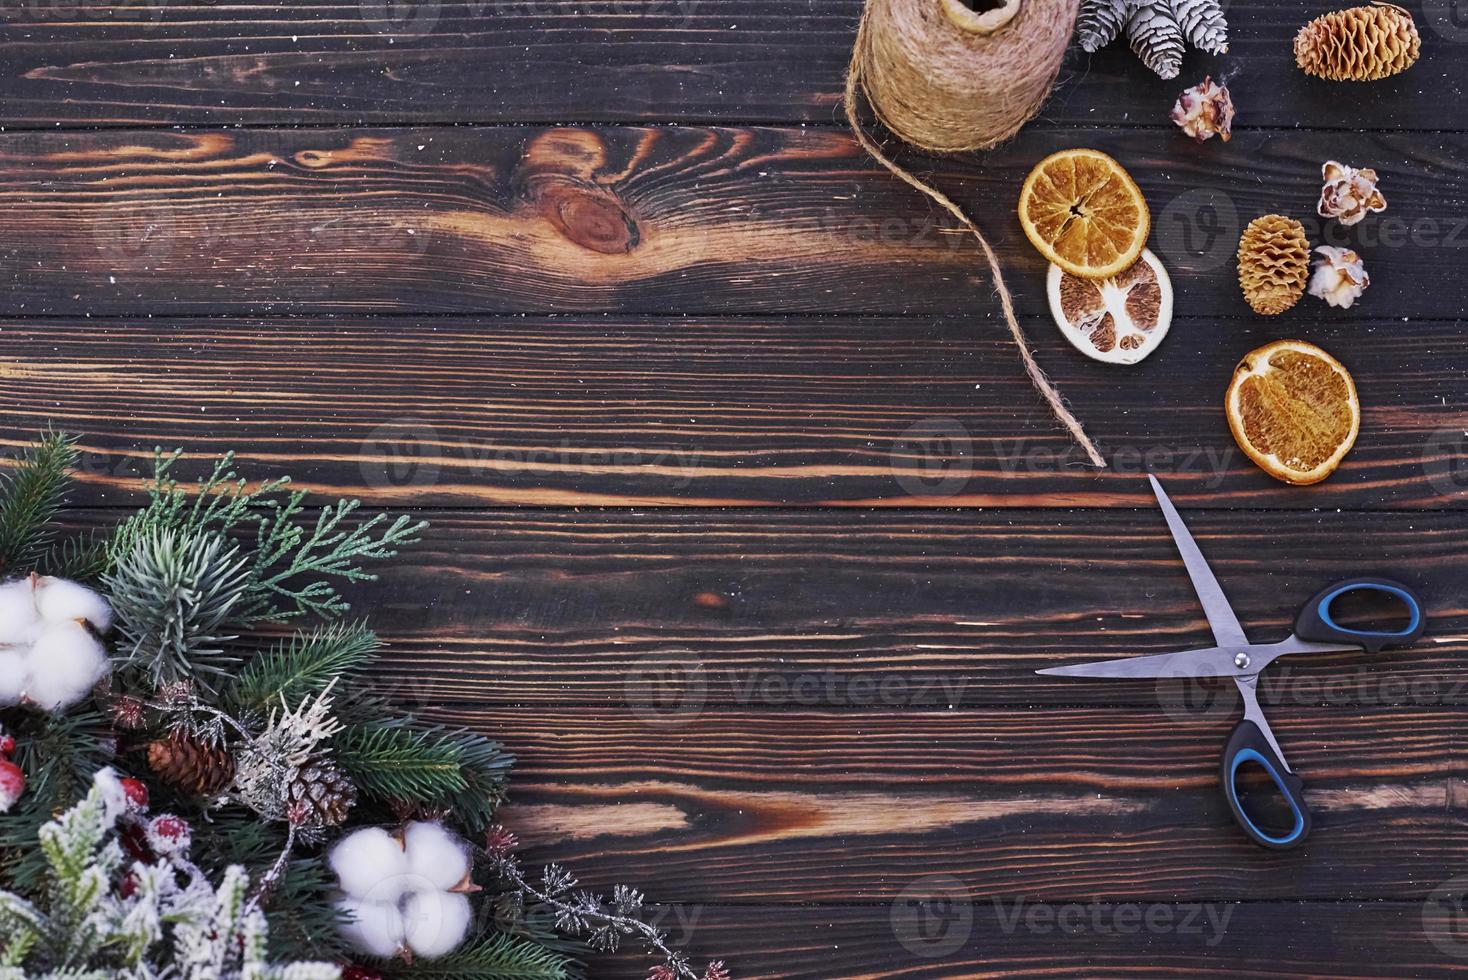 ciseaux sur la table. vue de dessus du cadre festif de noël avec des décorations du nouvel an photo